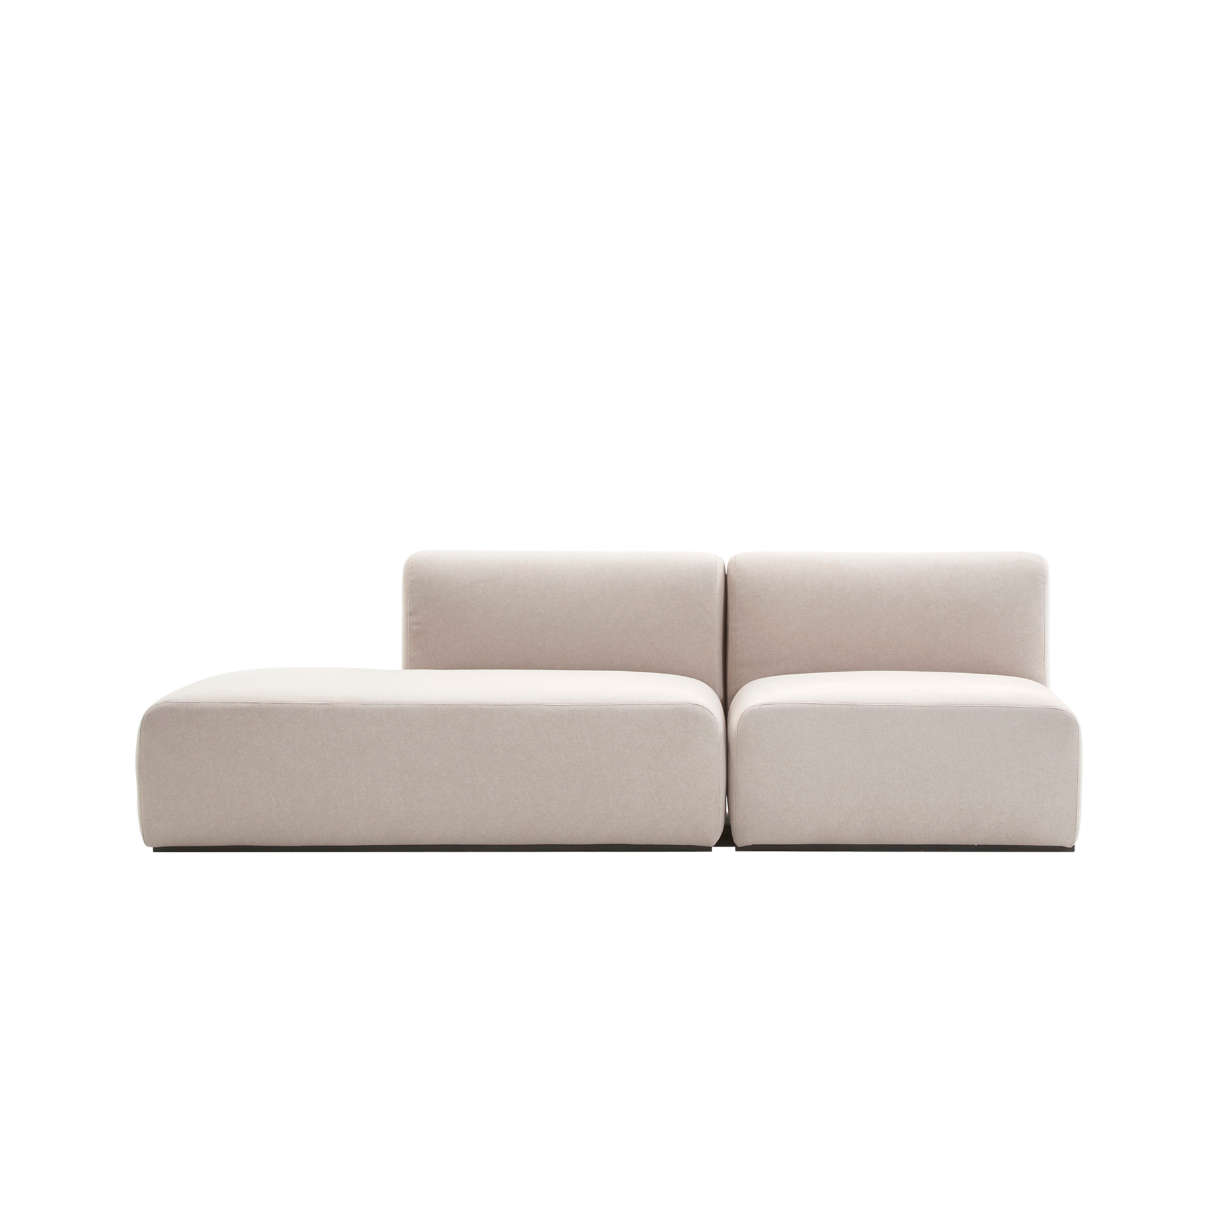 (주)도이치 DOICH ® Aquaclean PEN3 modular couch sofa  도이치 Pen3  3인 카우치 소파 ( 카우치+1인 ) /(스페인 아쿠아클린)  [3주 주문제작]